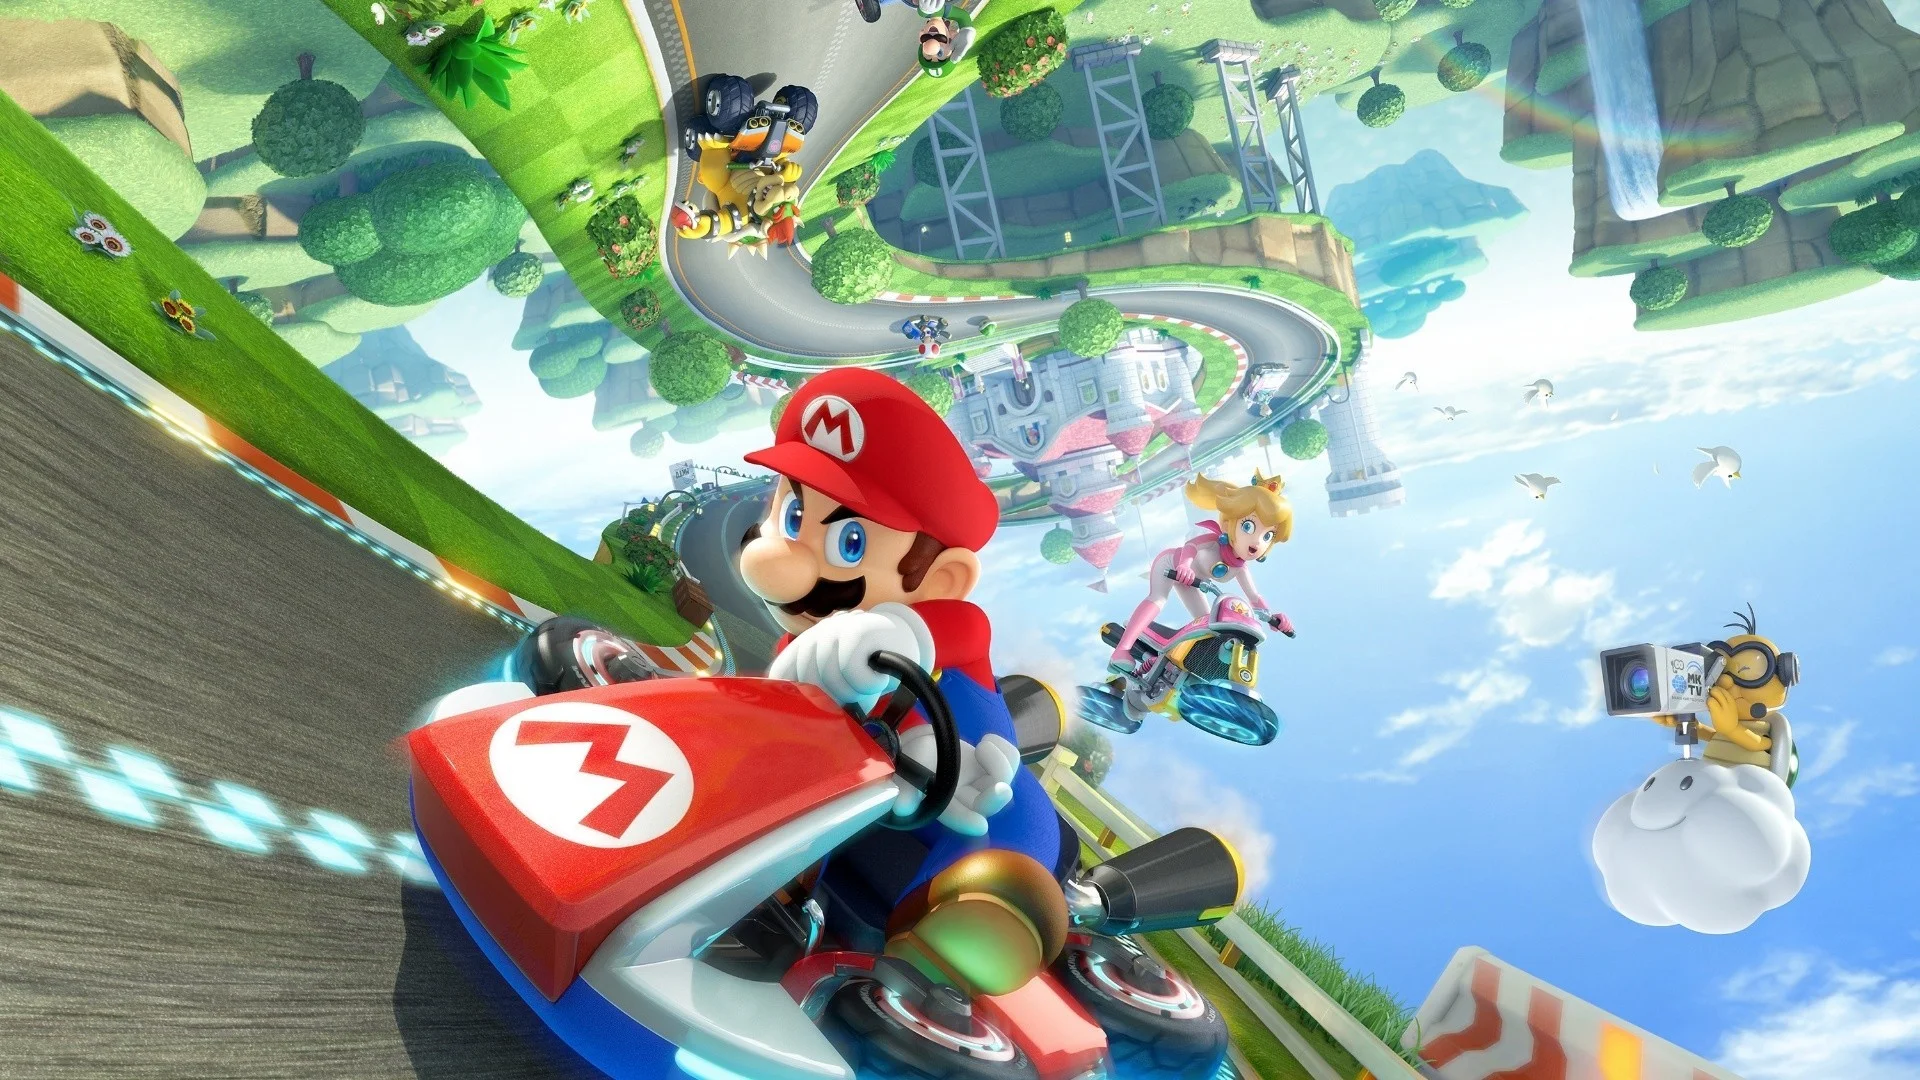 Парк Nintendo по мотивам Super Mario обойдется в 40 млрд йен - фото 1